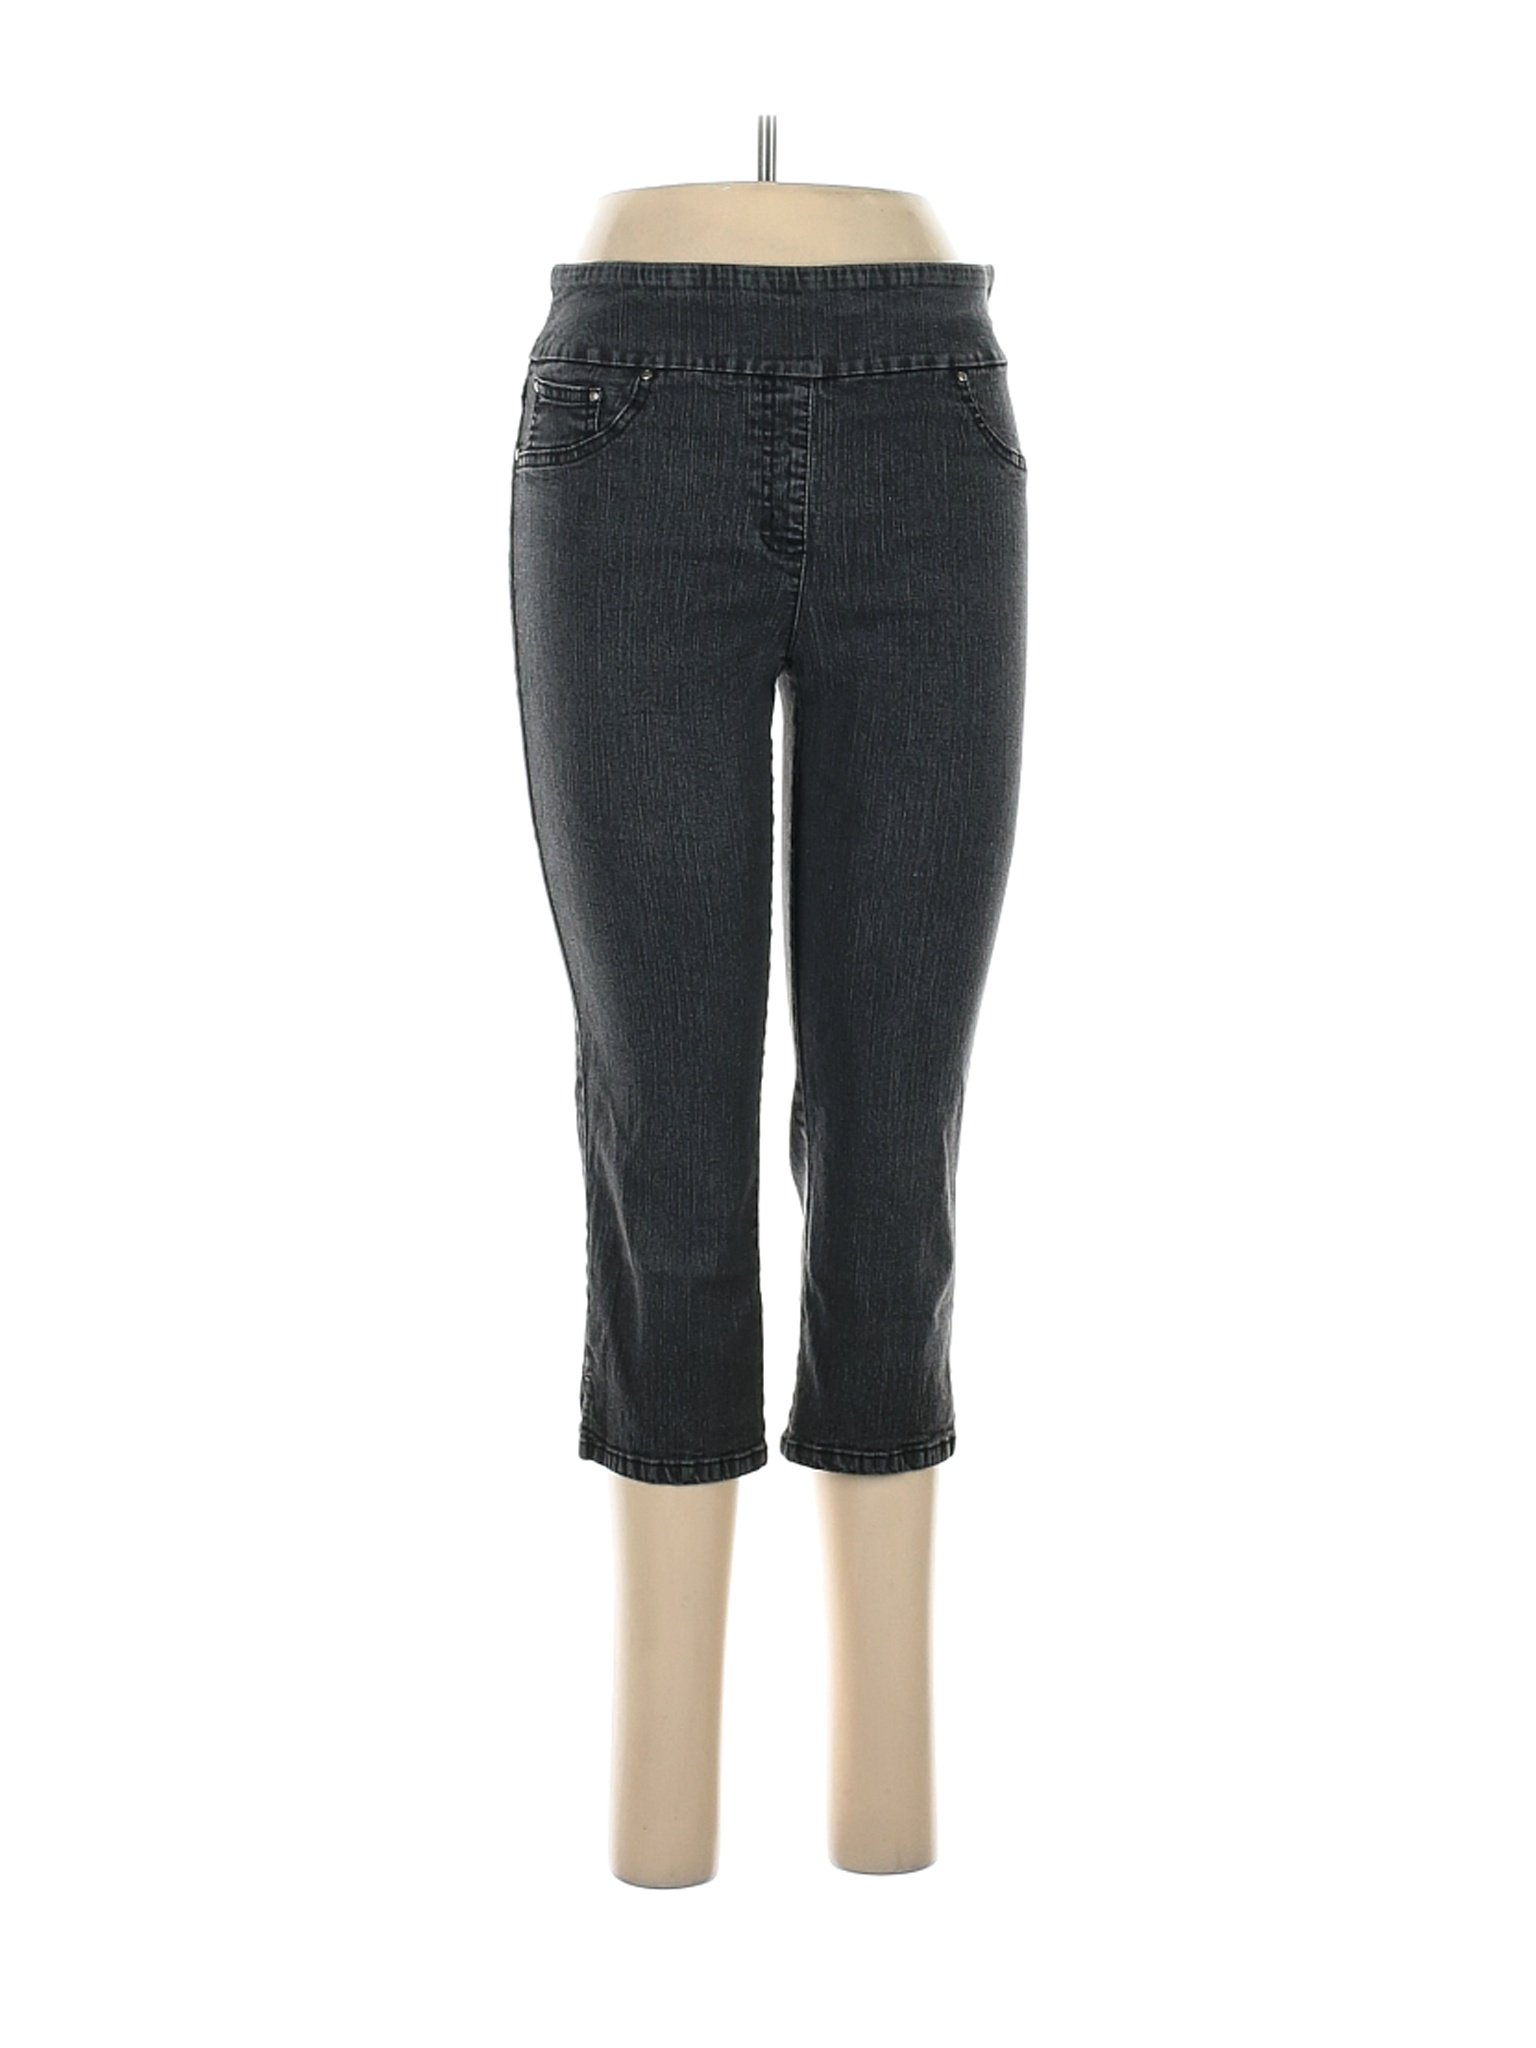 Ruby Rd. Women Black Jeans 6 | eBay